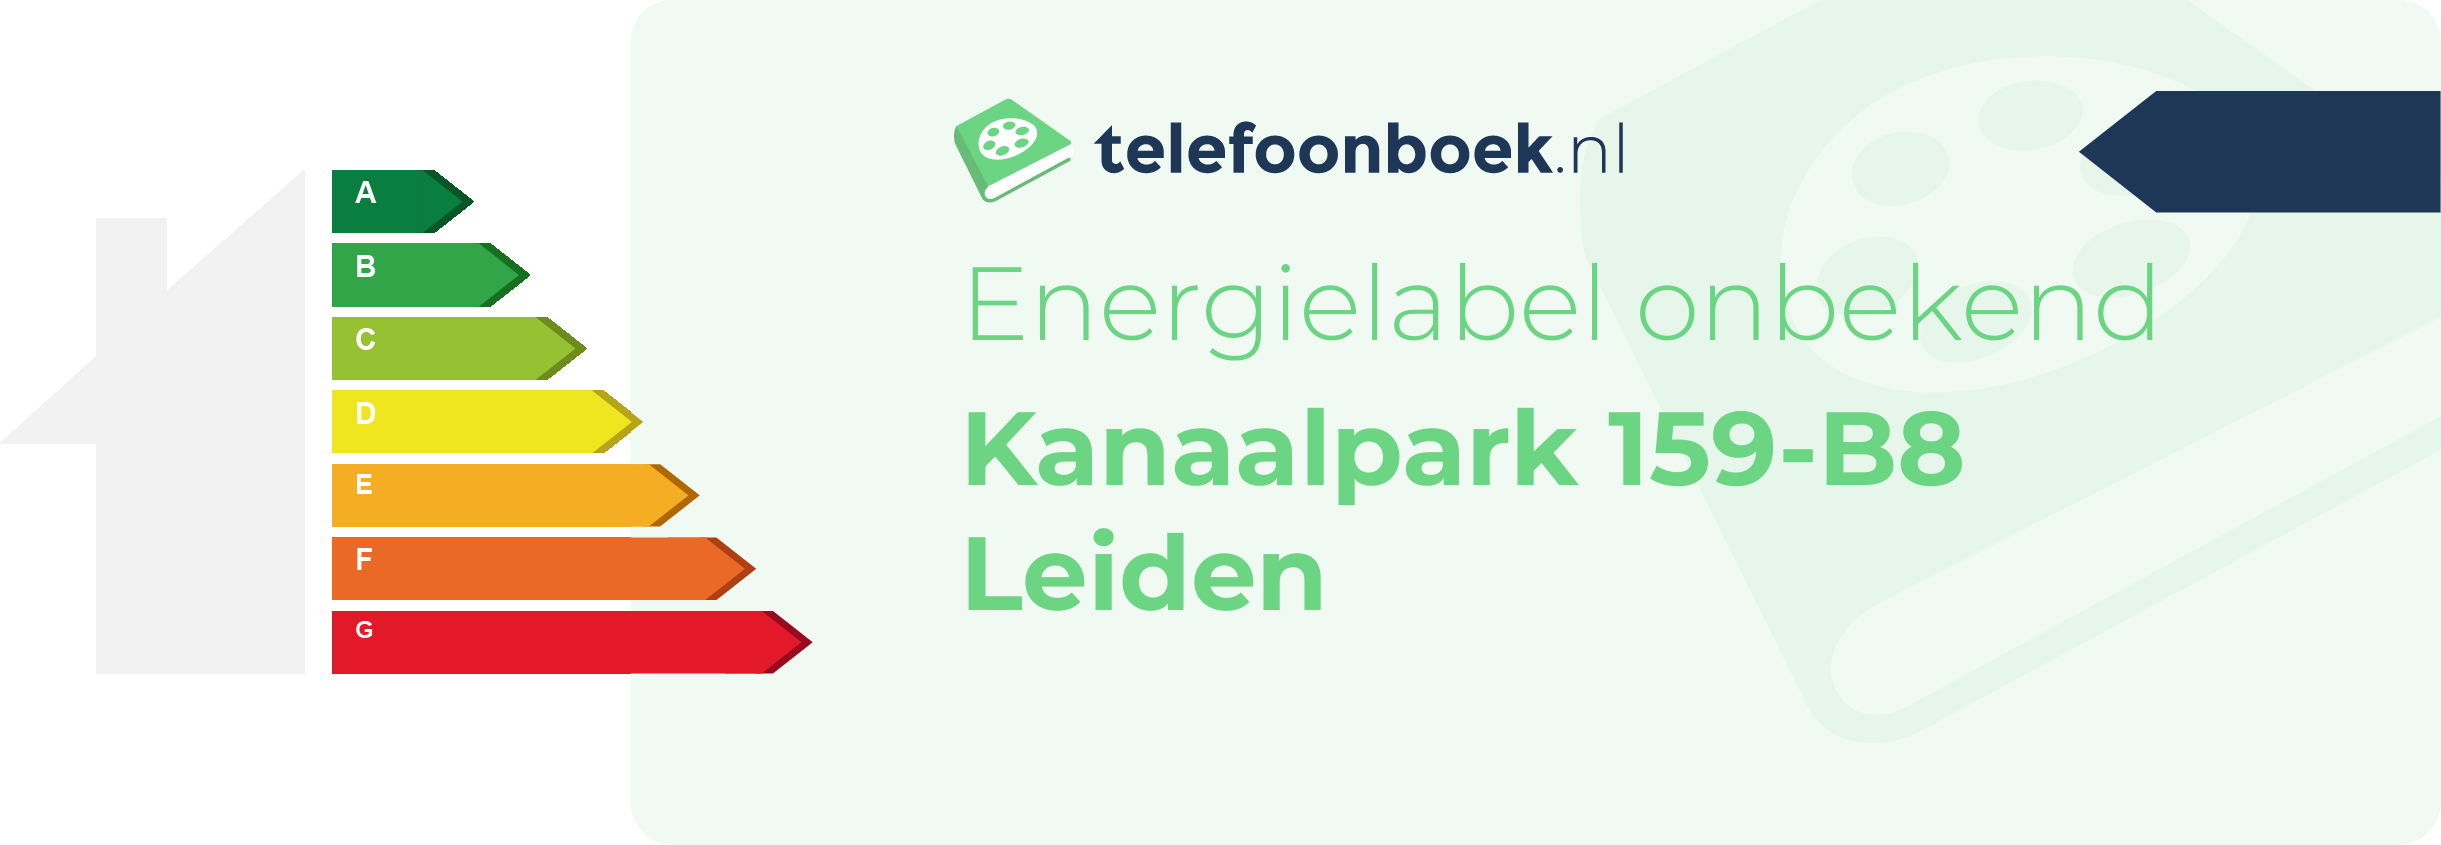 Energielabel Kanaalpark 159-B8 Leiden